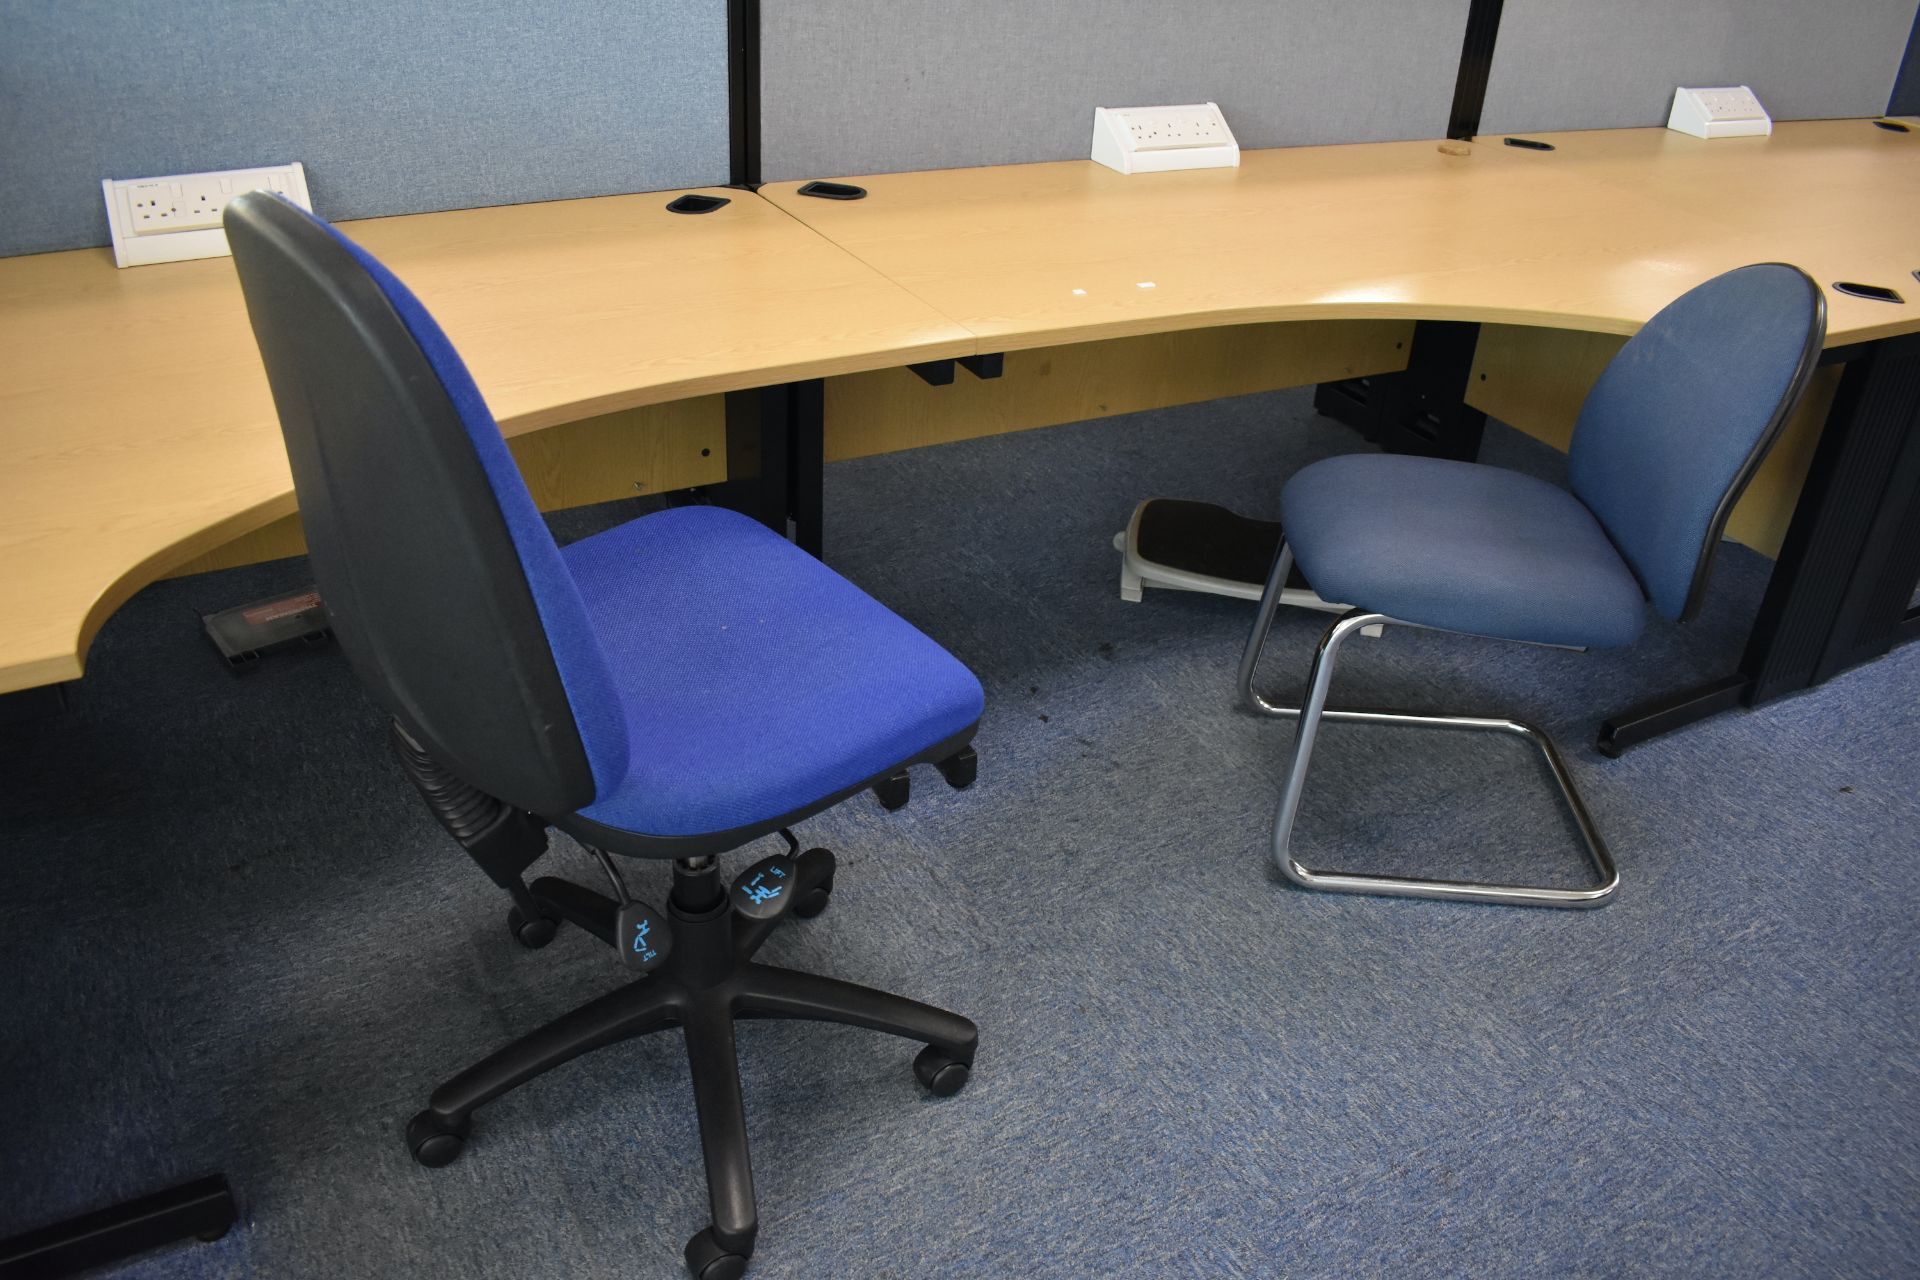 Hard wired corner & wave desks LH & RH, desk screens, footrest, task chair, coat stand, pedestal - Image 22 of 22